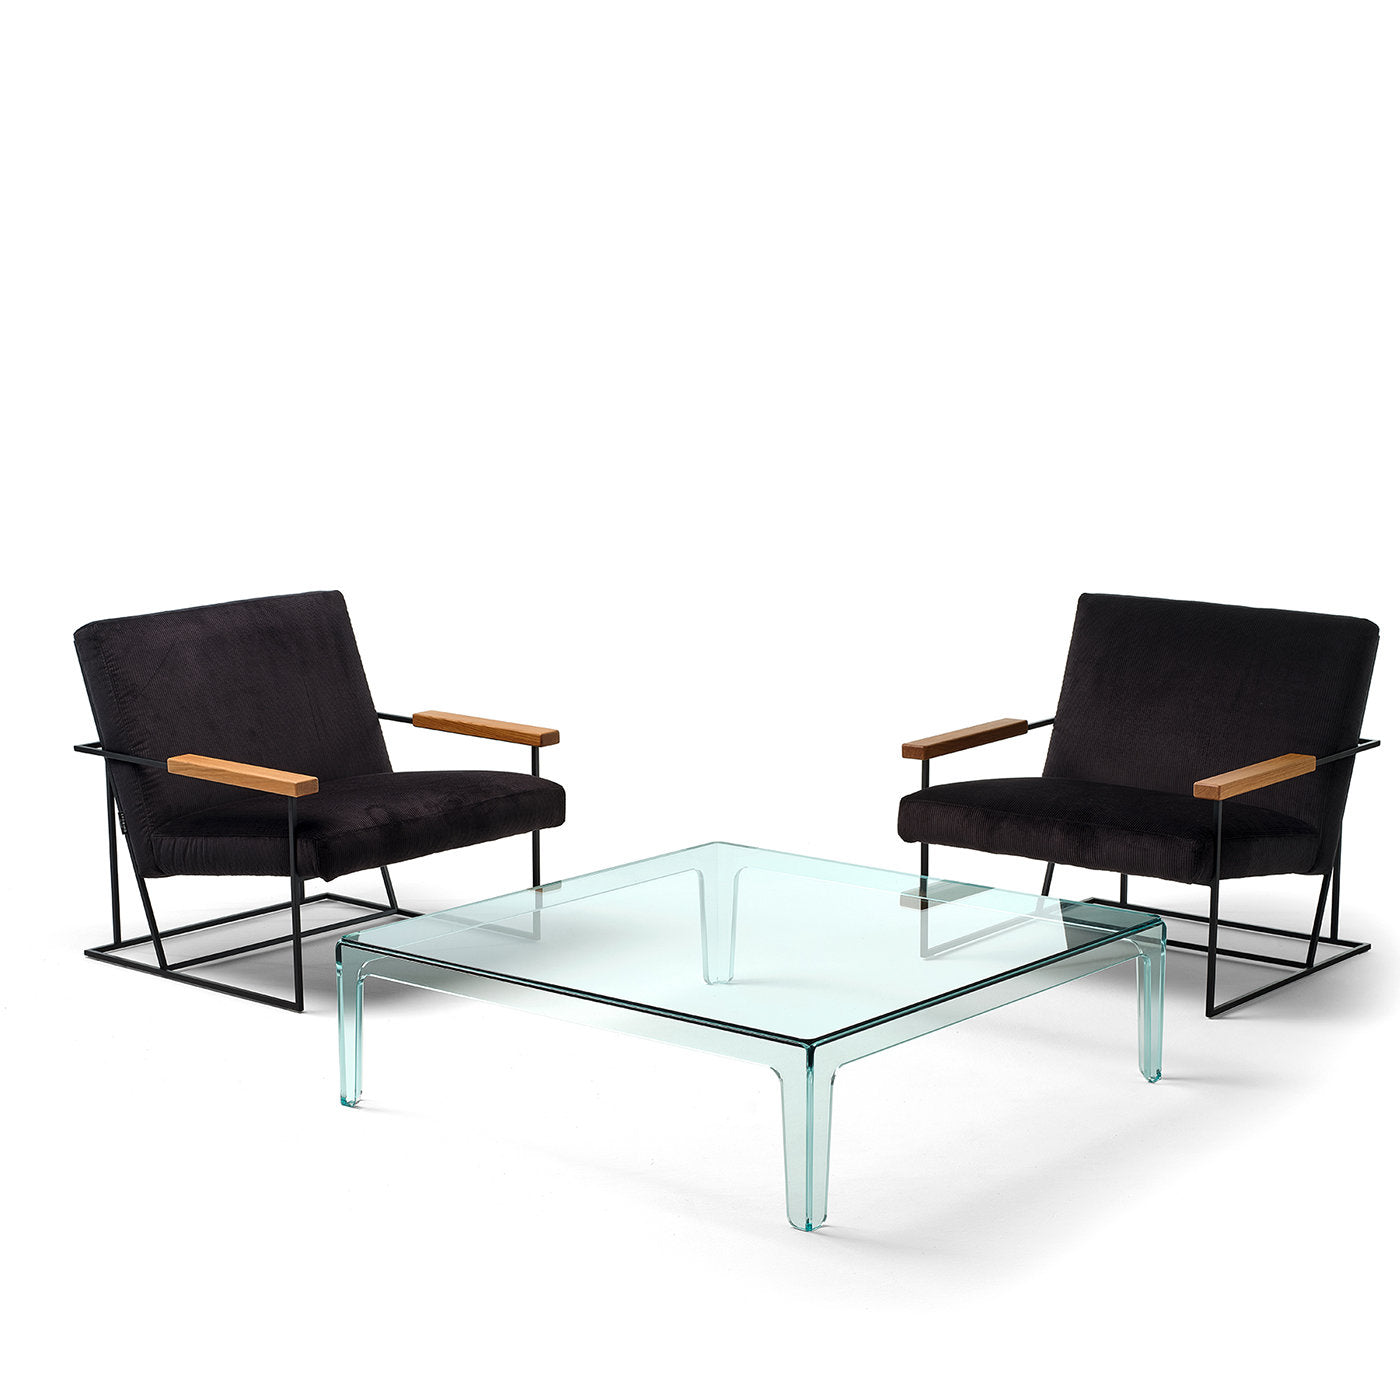 Sio Glass Coffee Table by Alberto Colzani - Alternative view 5